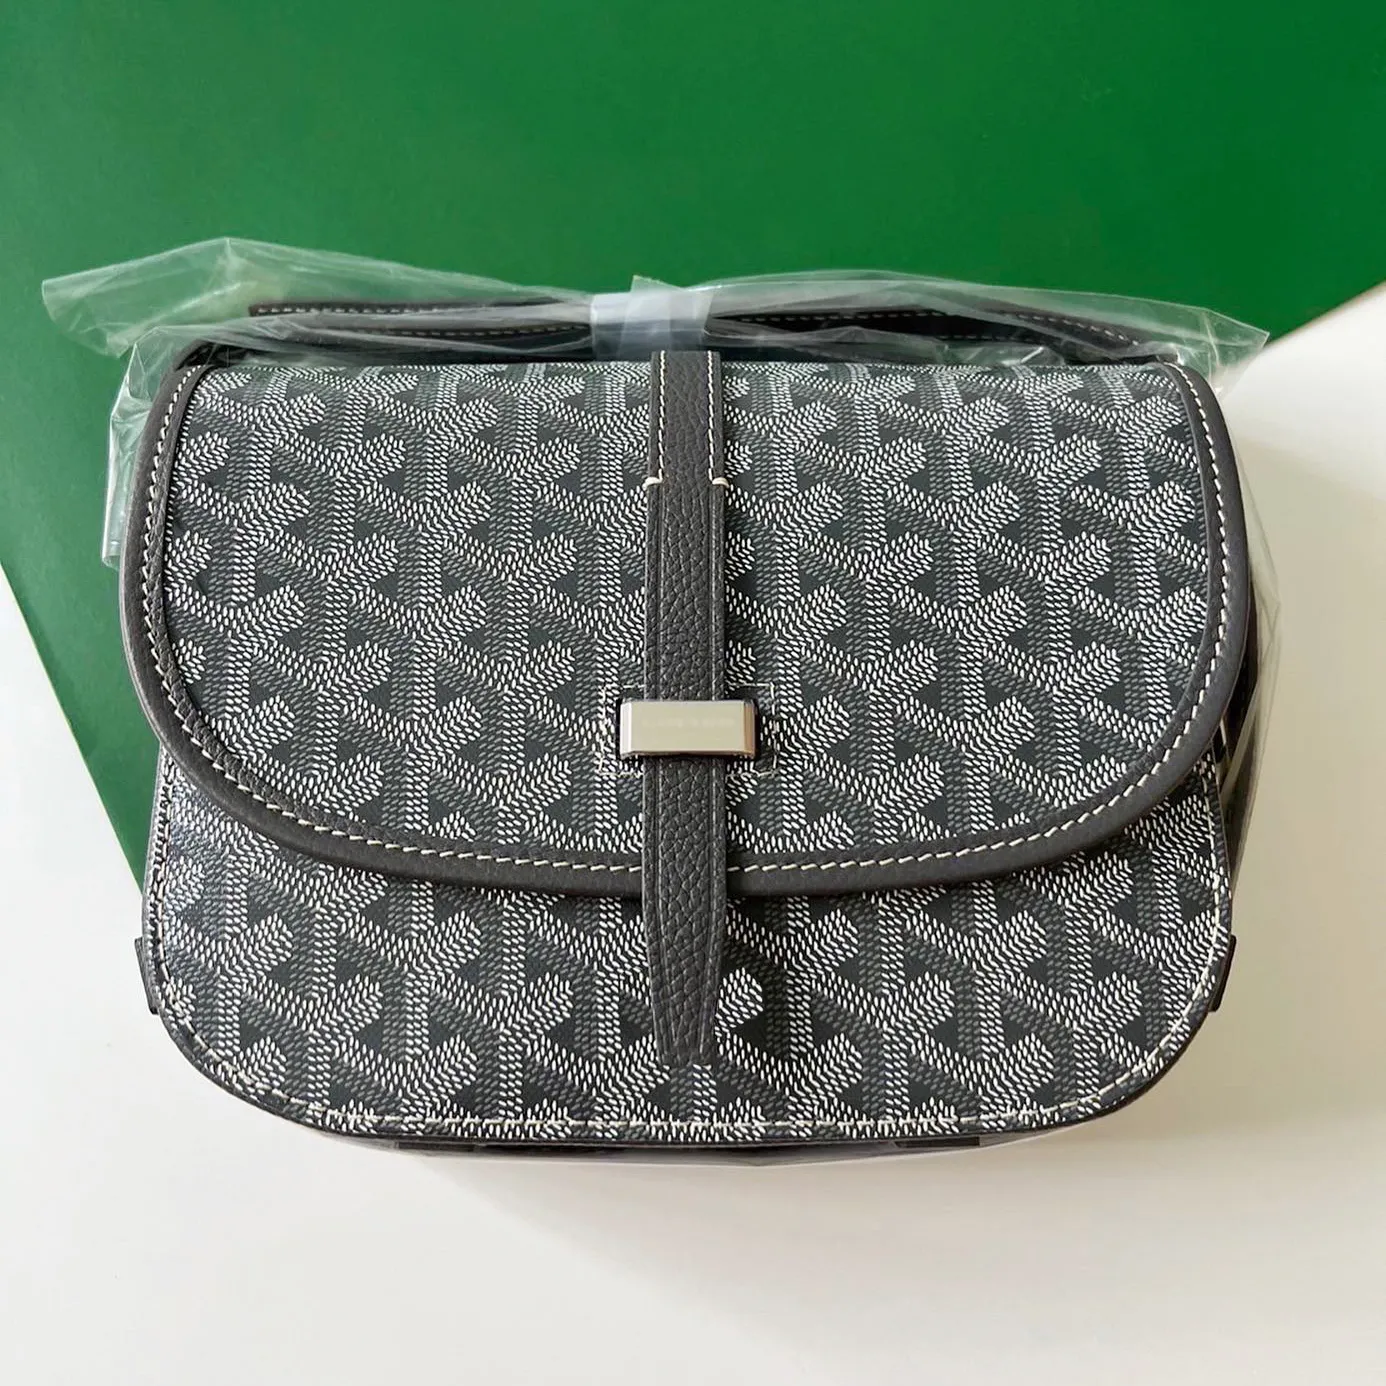 GO Yard Beedere Messenger Bag 10a Tasarımcı için Tasarımcı Crossbody Deri Postacı Omuz Çantaları Eyer Debriyaj Cüzdan Çantası Çanta Çanta Tote Zarfı İnsan Çantası